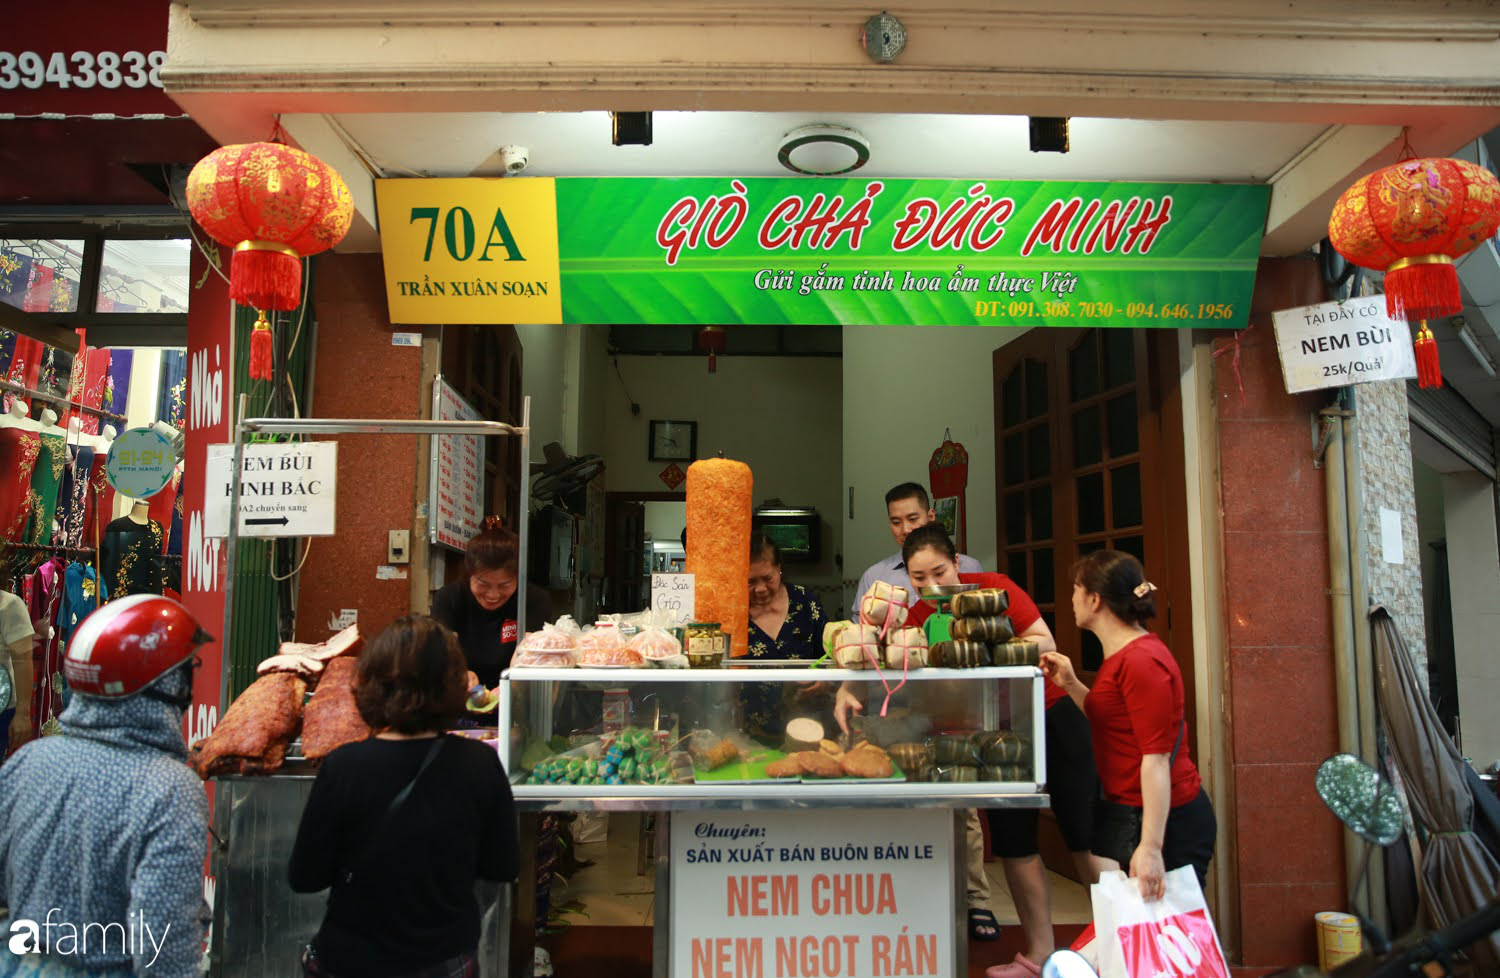 Không khí tấp nập ngày Tết ở những hàng giò chả, bánh chưng gia truyền trên phố ở Hà Nội: Người mua xếp hàng đến lượt, kẻ bán không ngơi chân tay - Ảnh 10.